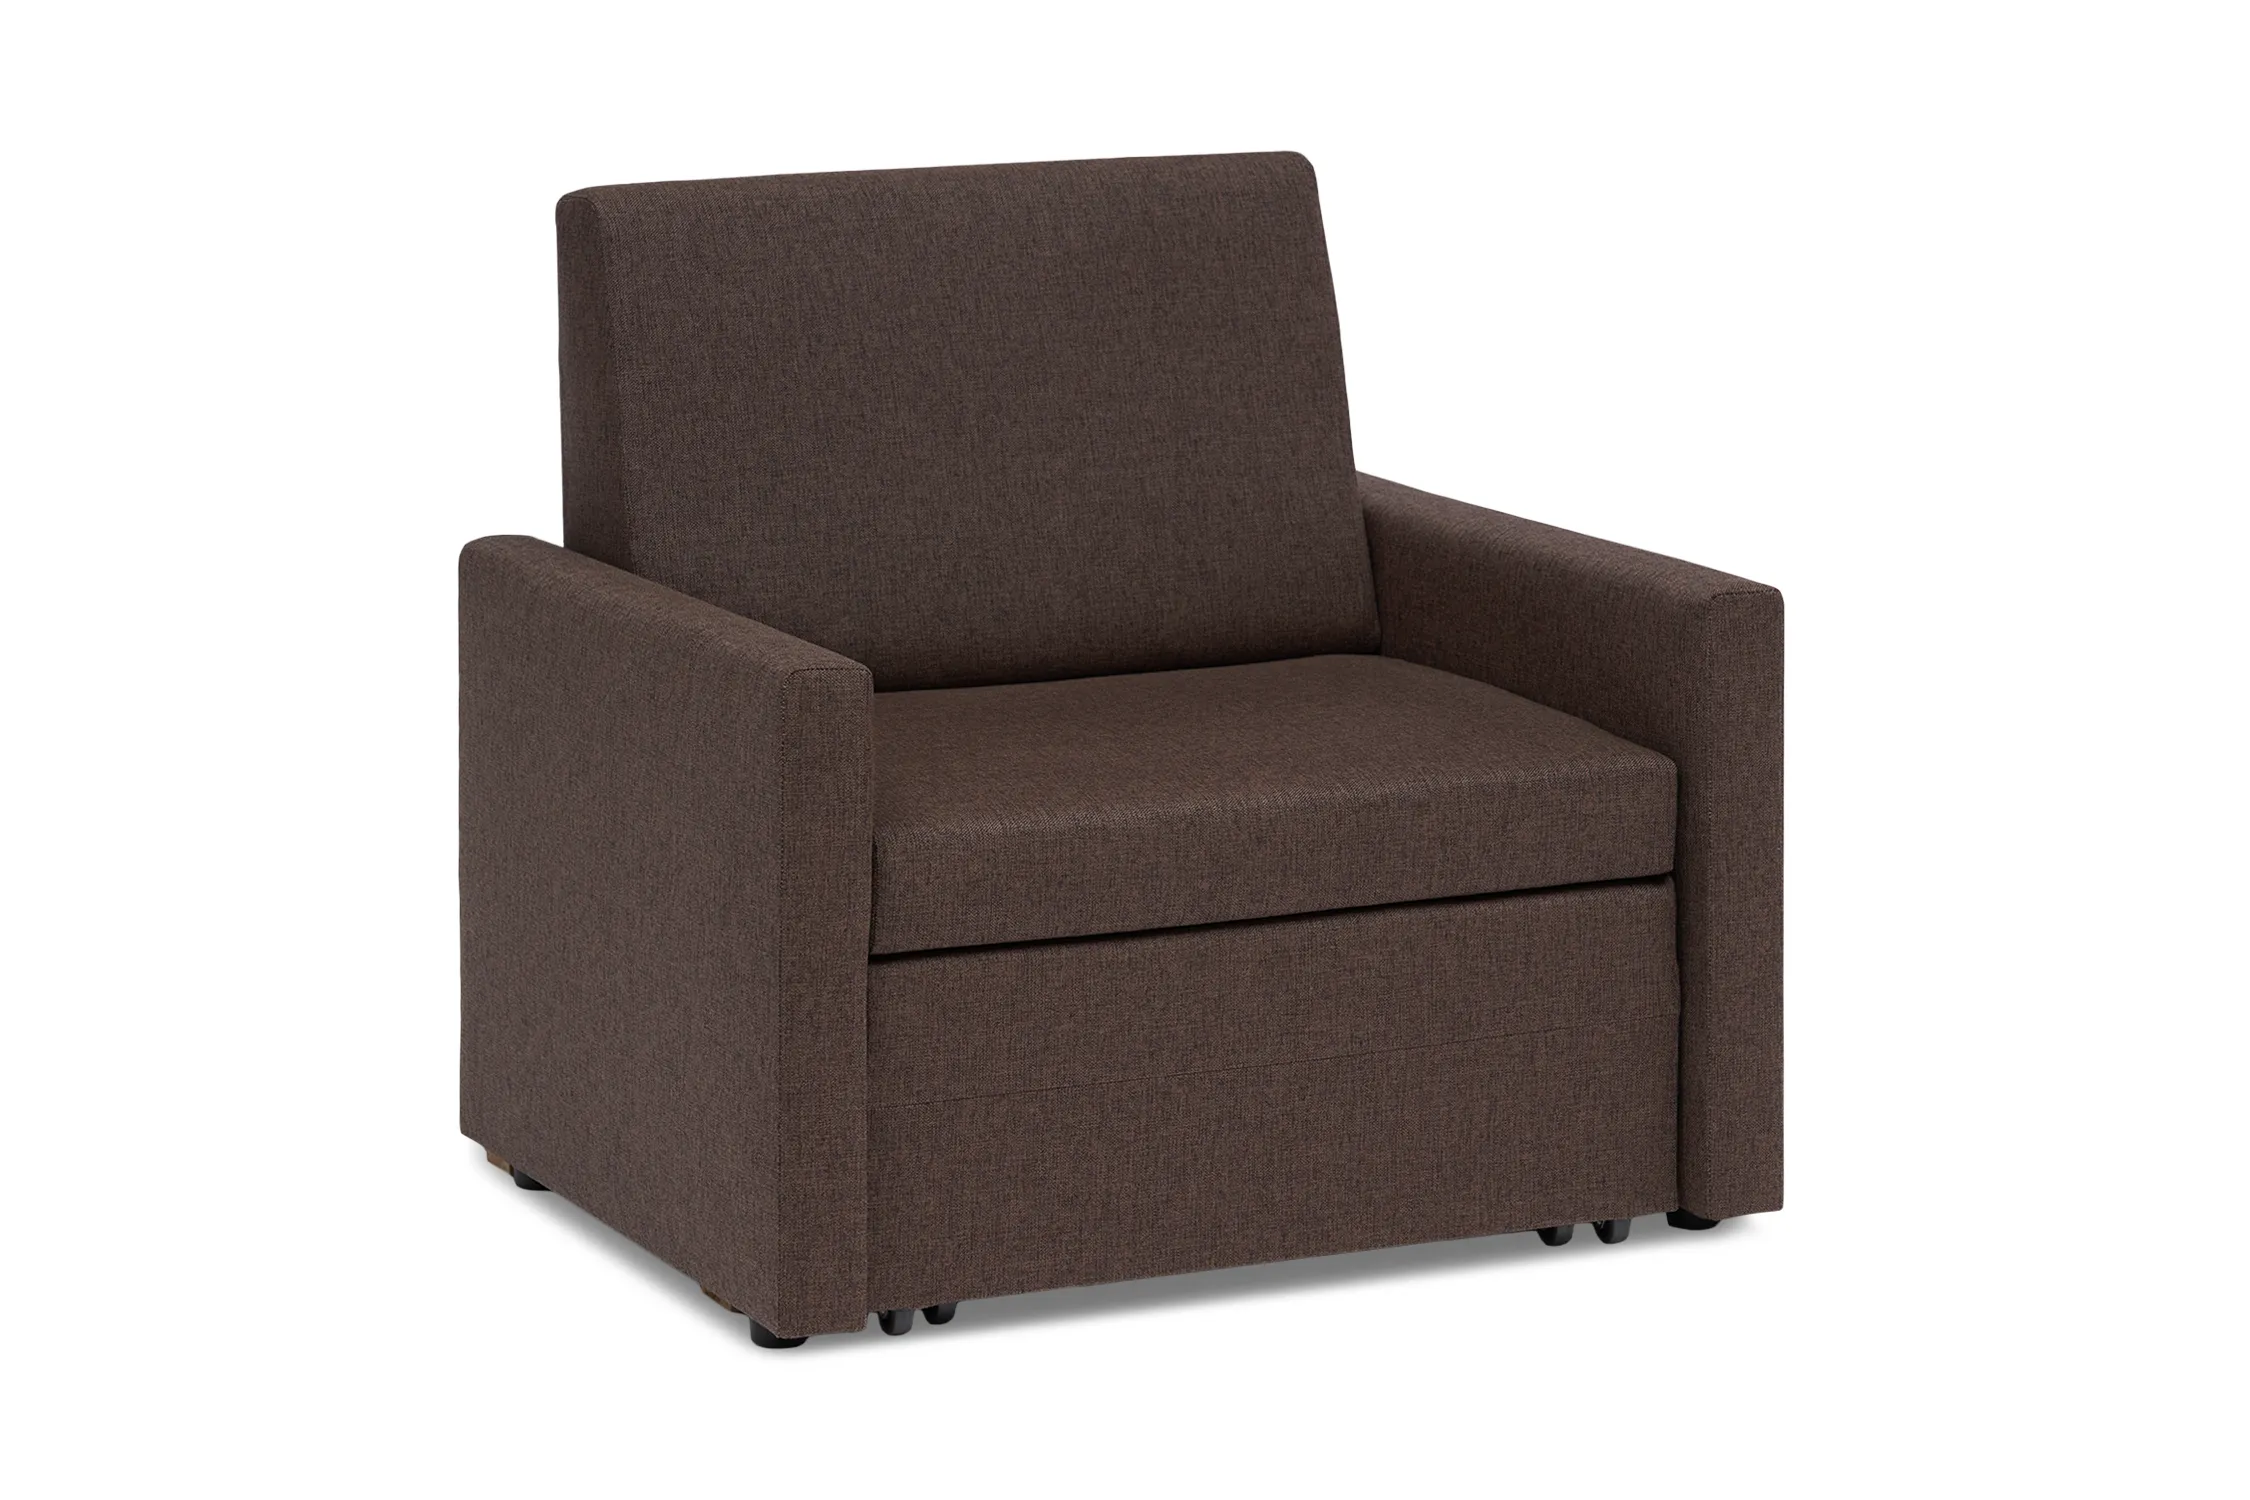 Кресло выкатное Виктория-5 коричневое